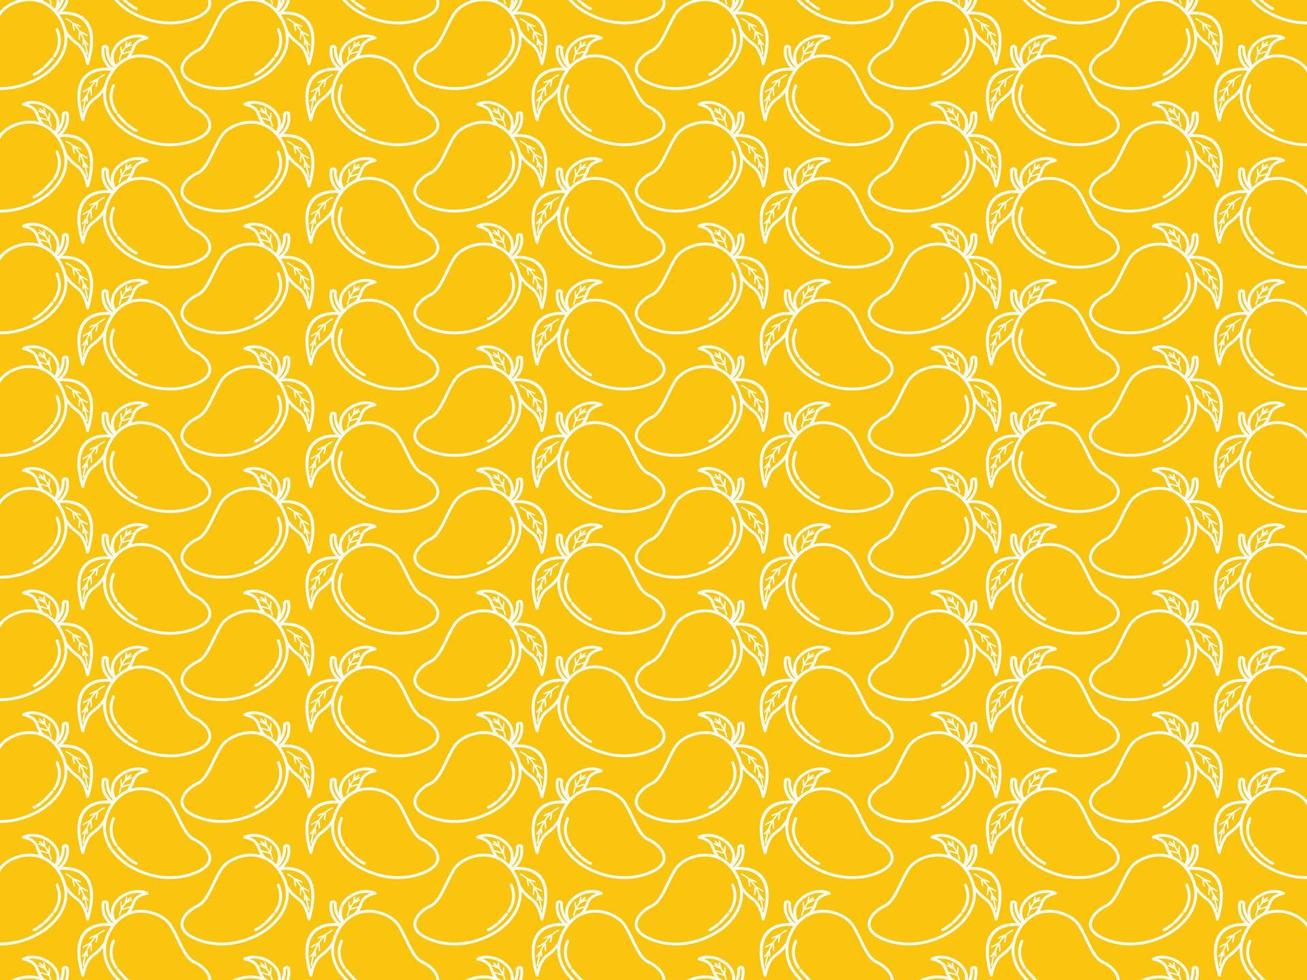 mango con hojas de patrones sin fisuras, repitiendo el diseño plano del patrón de frutas. se puede usar para empaquetar, envolver papel, tarjetas de felicitación, pegatinas, telas e impresiones. vector